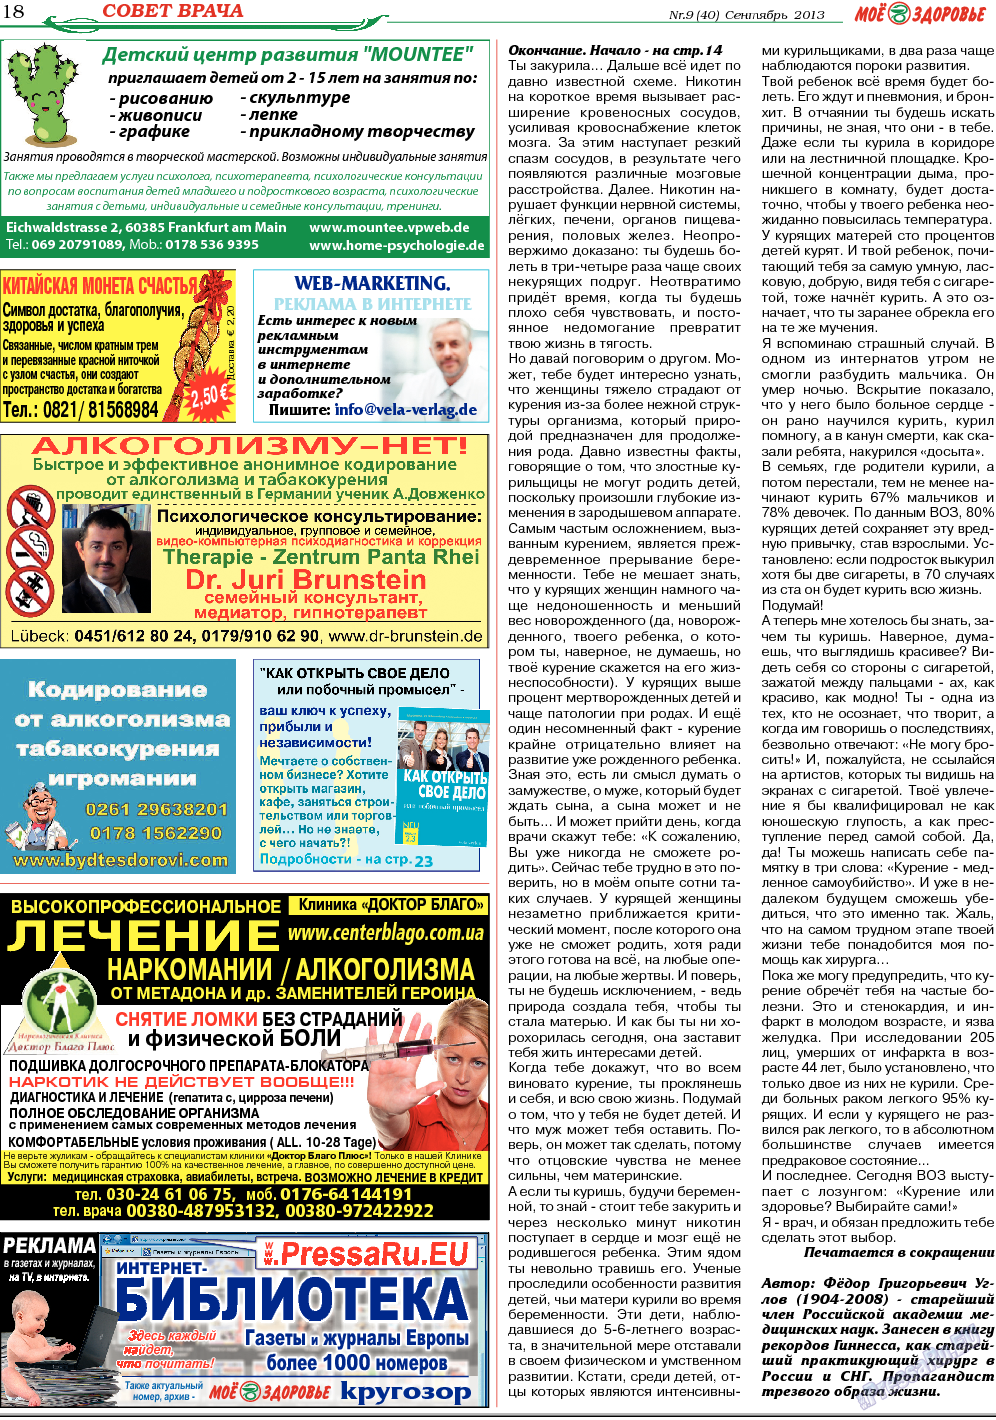 Кругозор (газета). 2013 год, номер 9, стр. 18